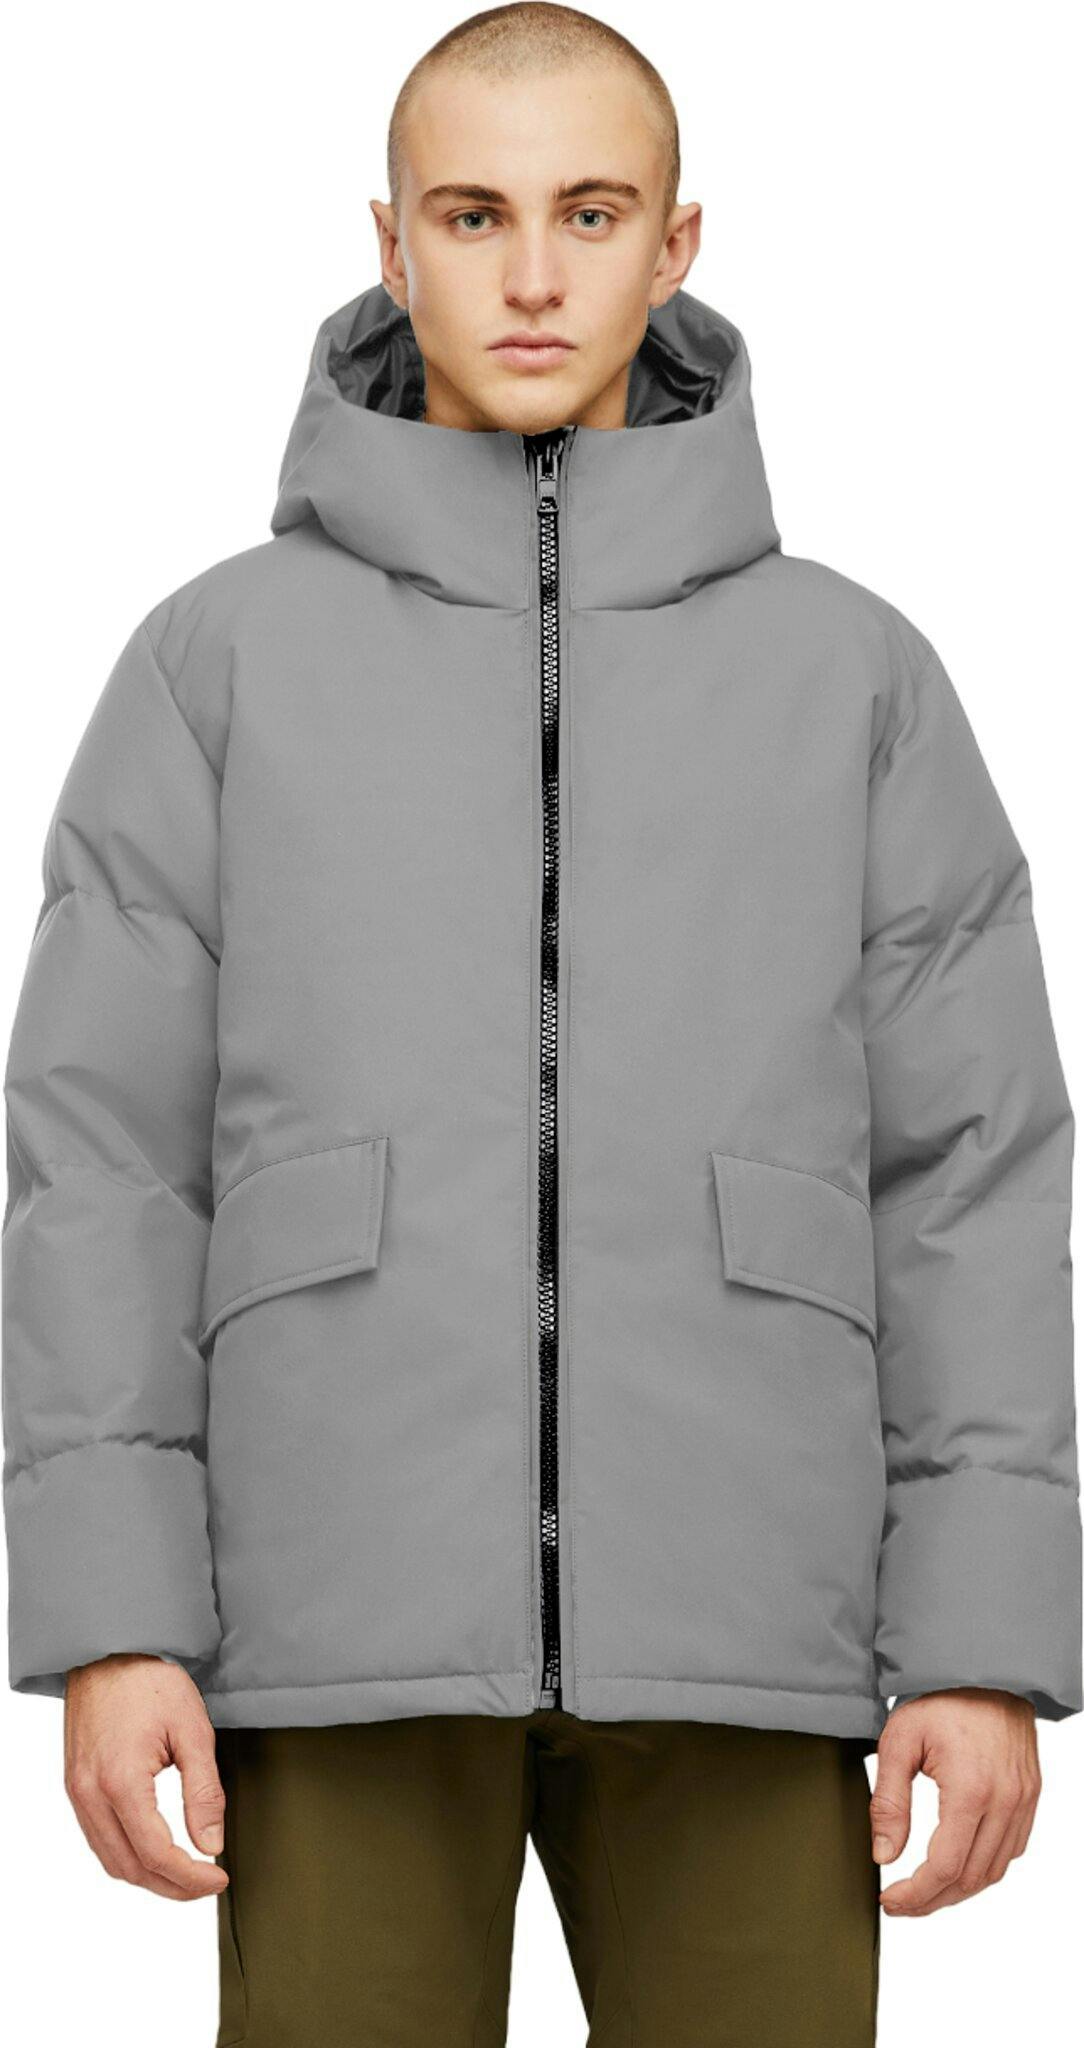 Numéro de l'image de la galerie de produits 1 pour le produit Manteau d'hiver en duvet à capuchon Lennox 2.0 - Régulière - Homme